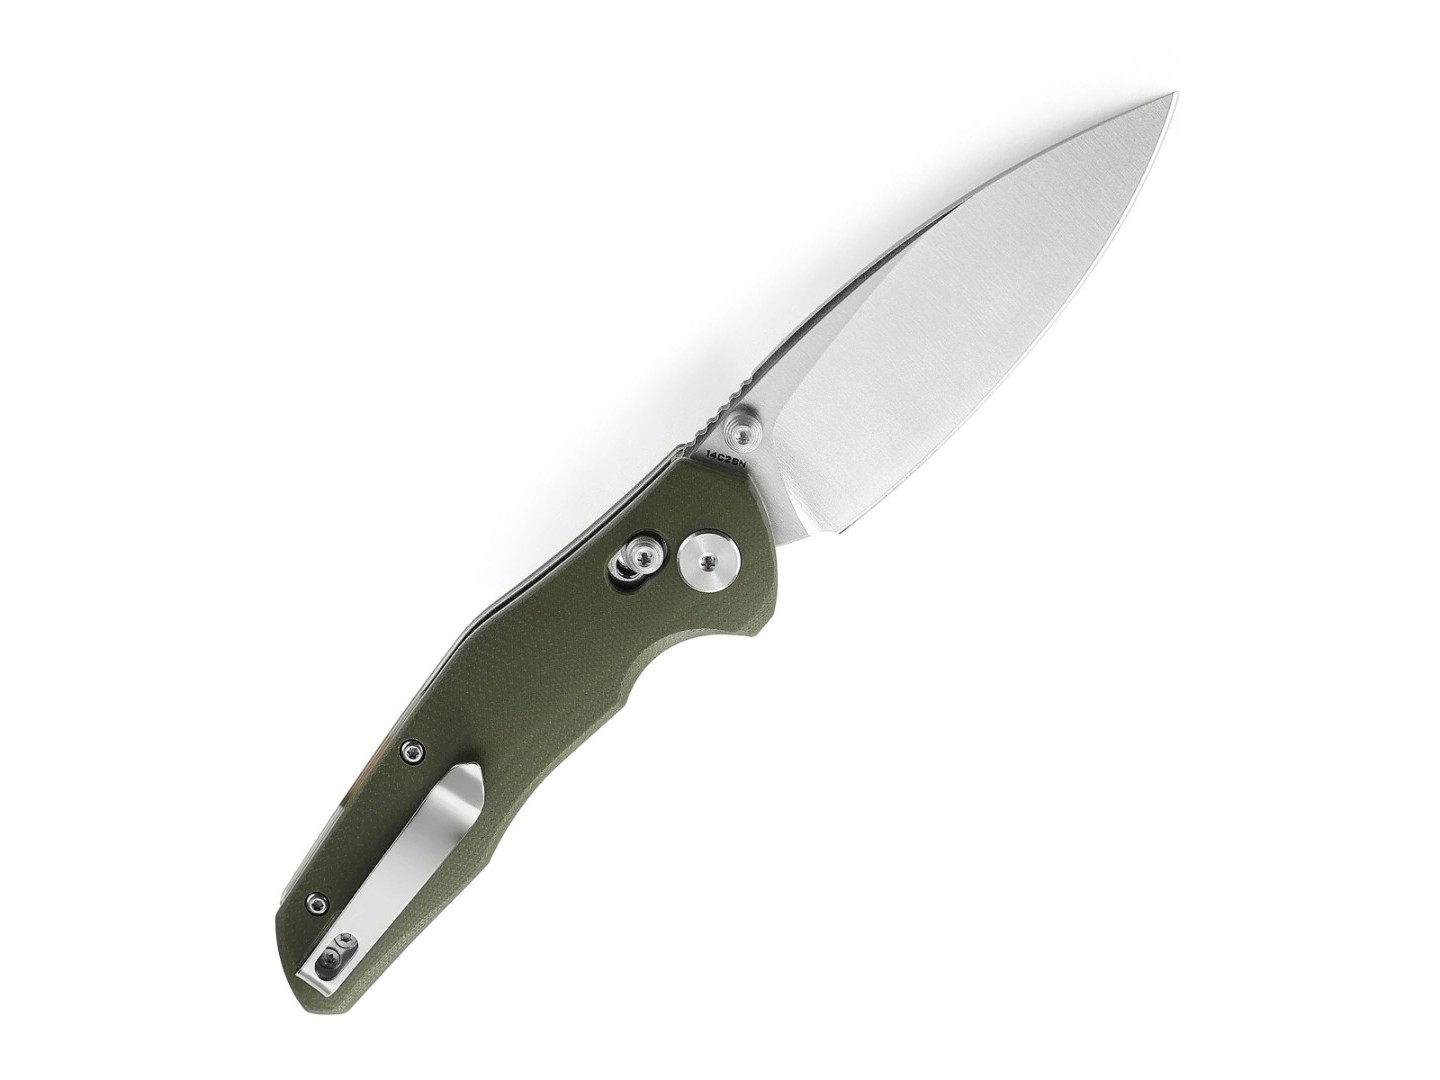 Нож Bestechman Ronan BMK02B сталь 14C28N satin, рукоять G10 OD green